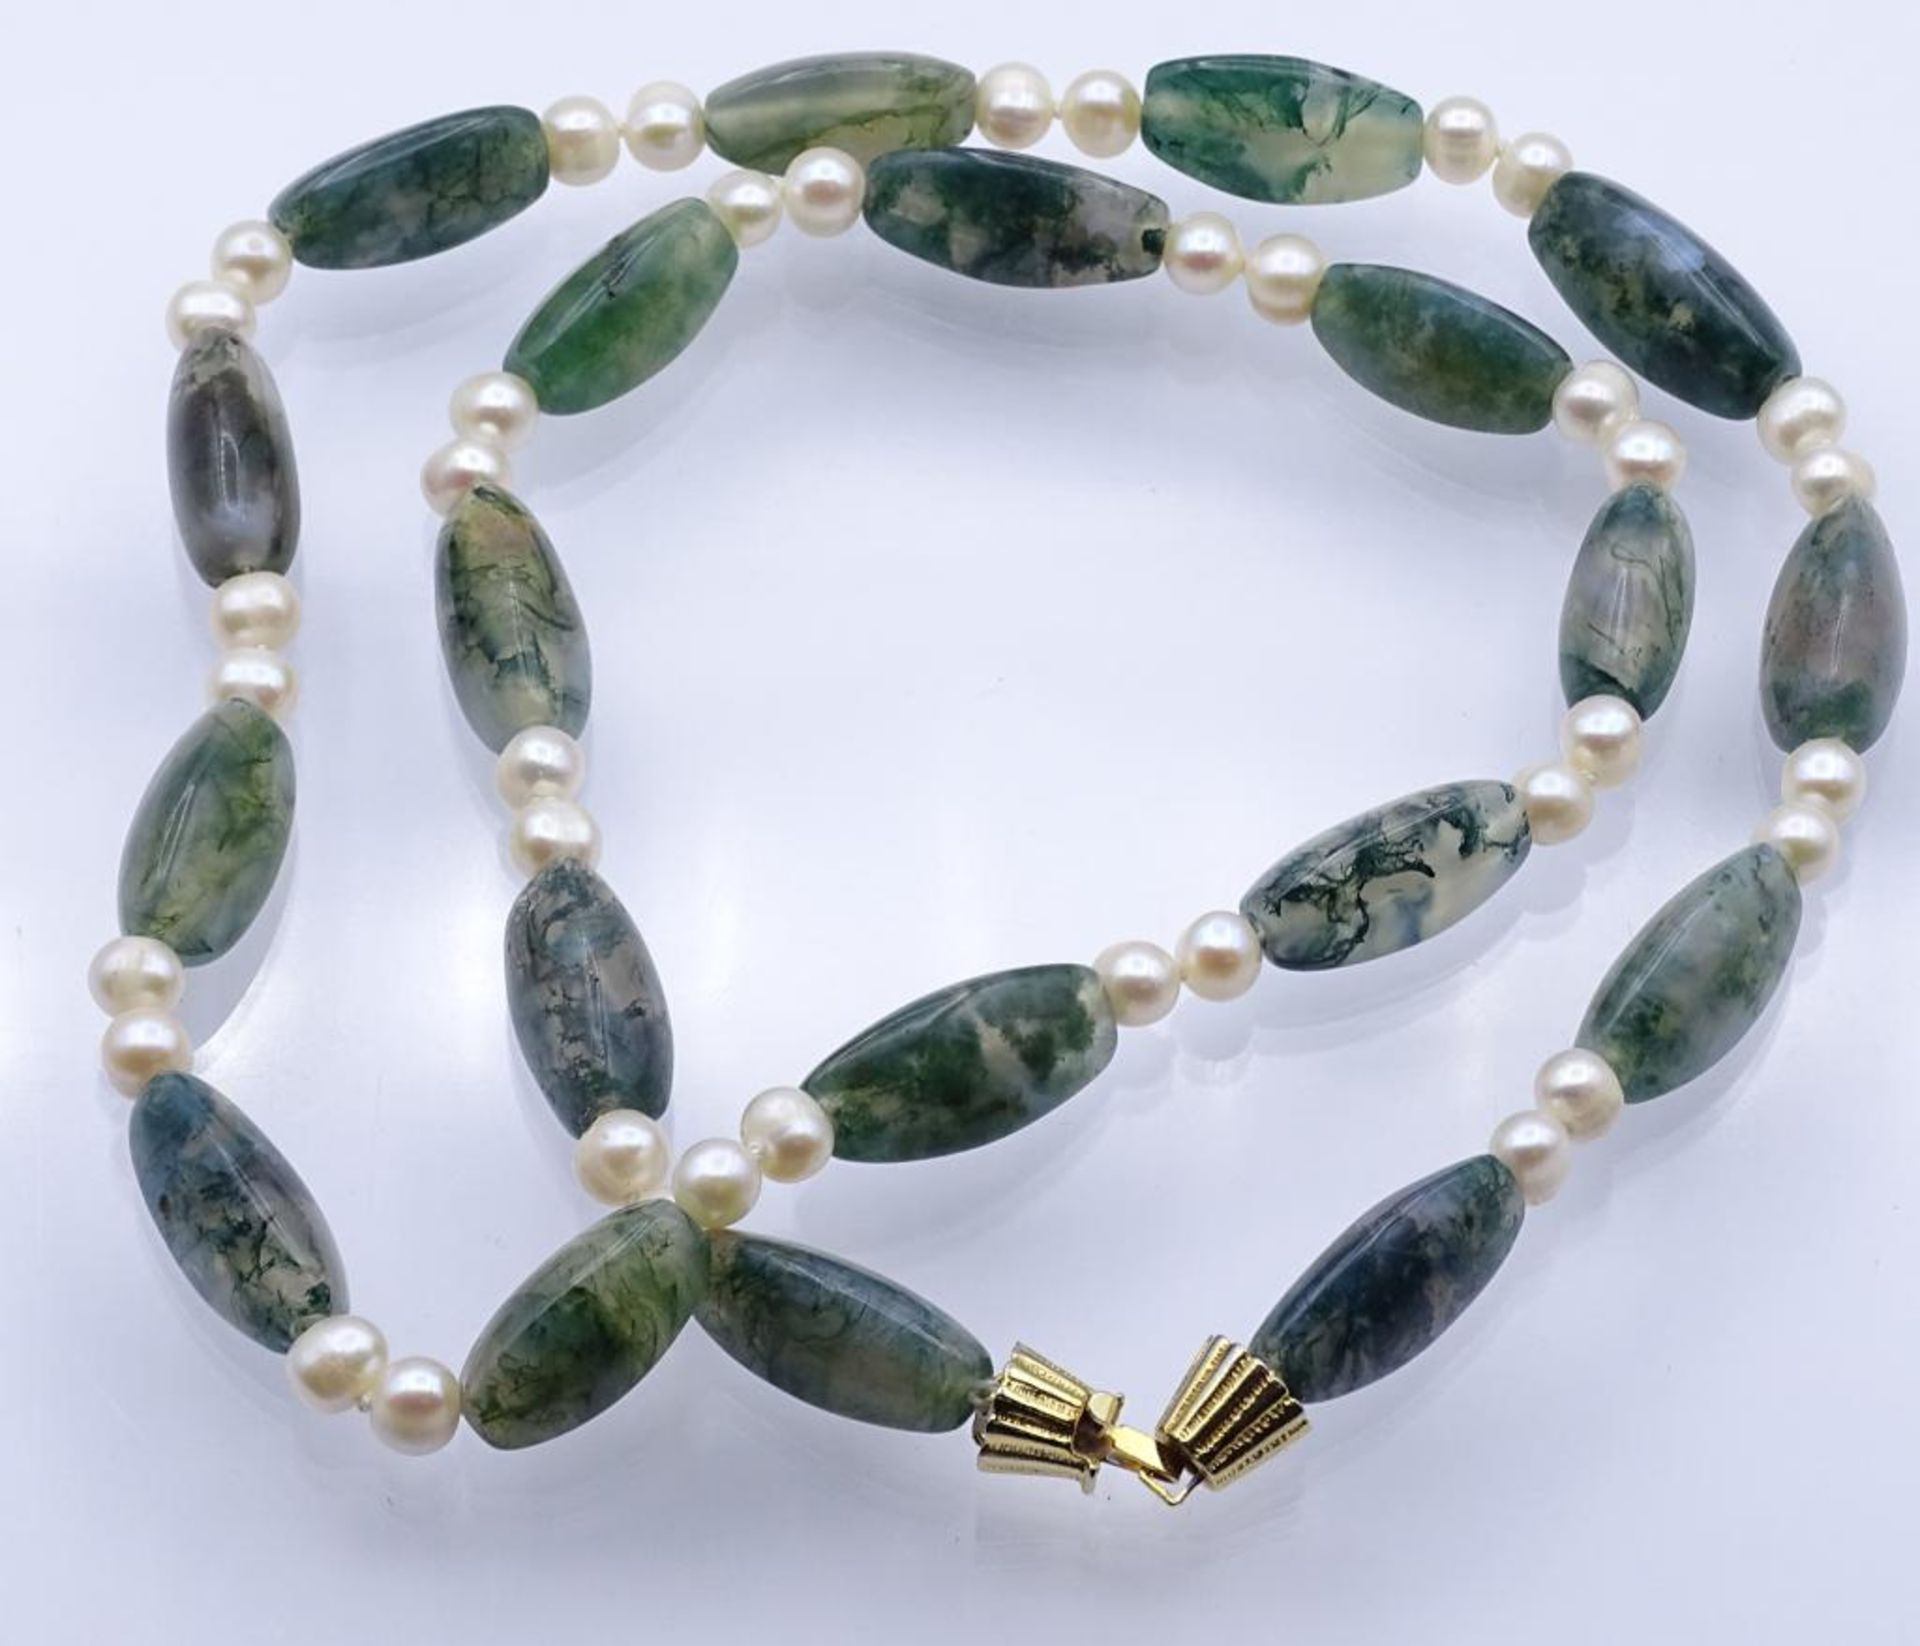 Halskette mit Perlen und Achat?,verg.Verschluss,ca.L- 68cm, 85gr.- - -22.61 % buyer's premium on the